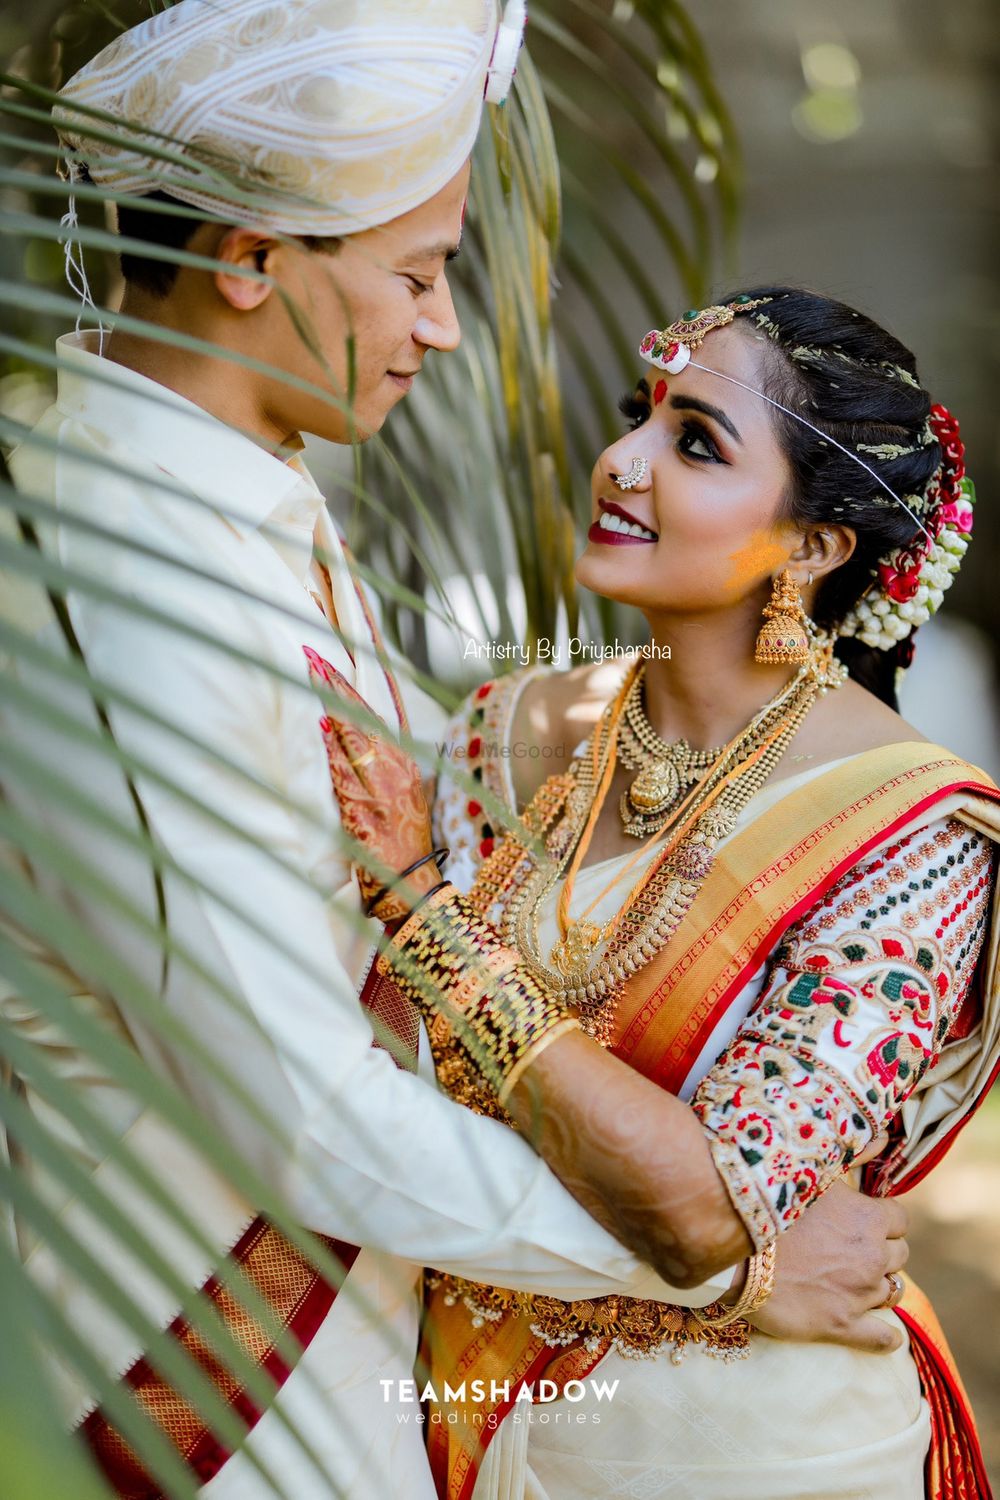 Photo By Artistry by Priya Harsha - Bridal Makeup